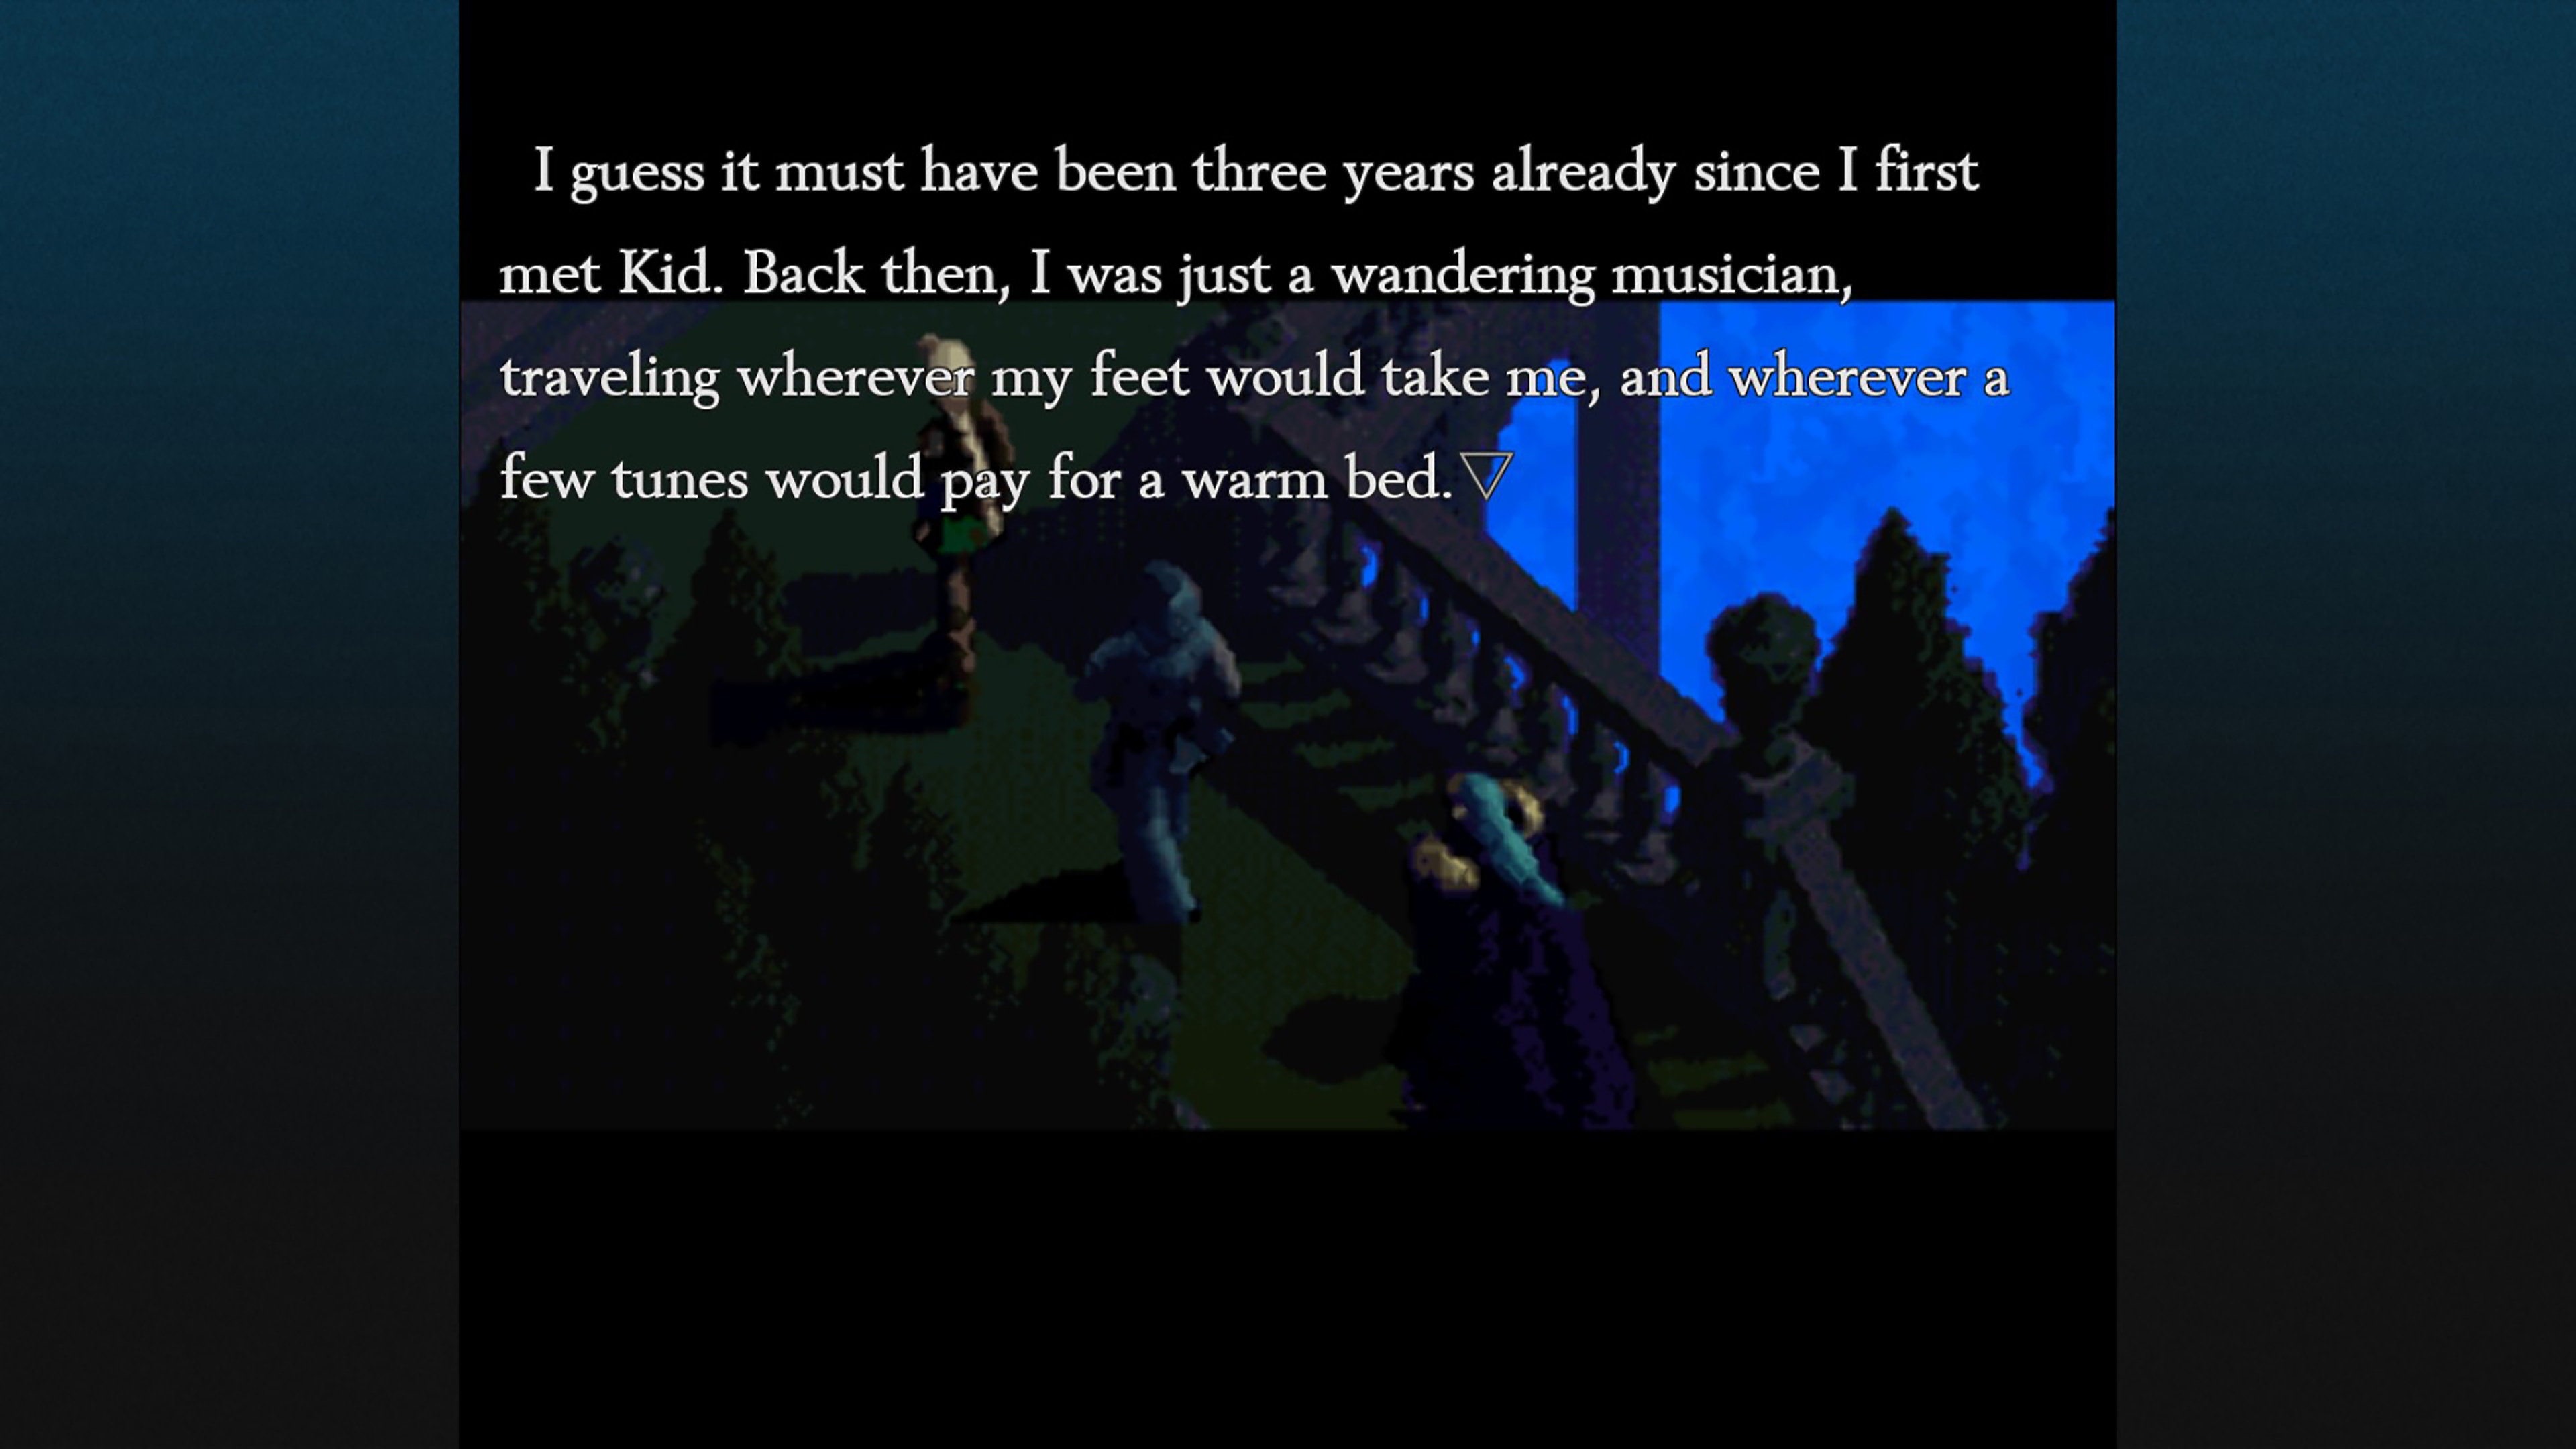 Chrono Cross: The Radical Dreamers Edition – skjermbilde som viser dialog mellom to karakterer